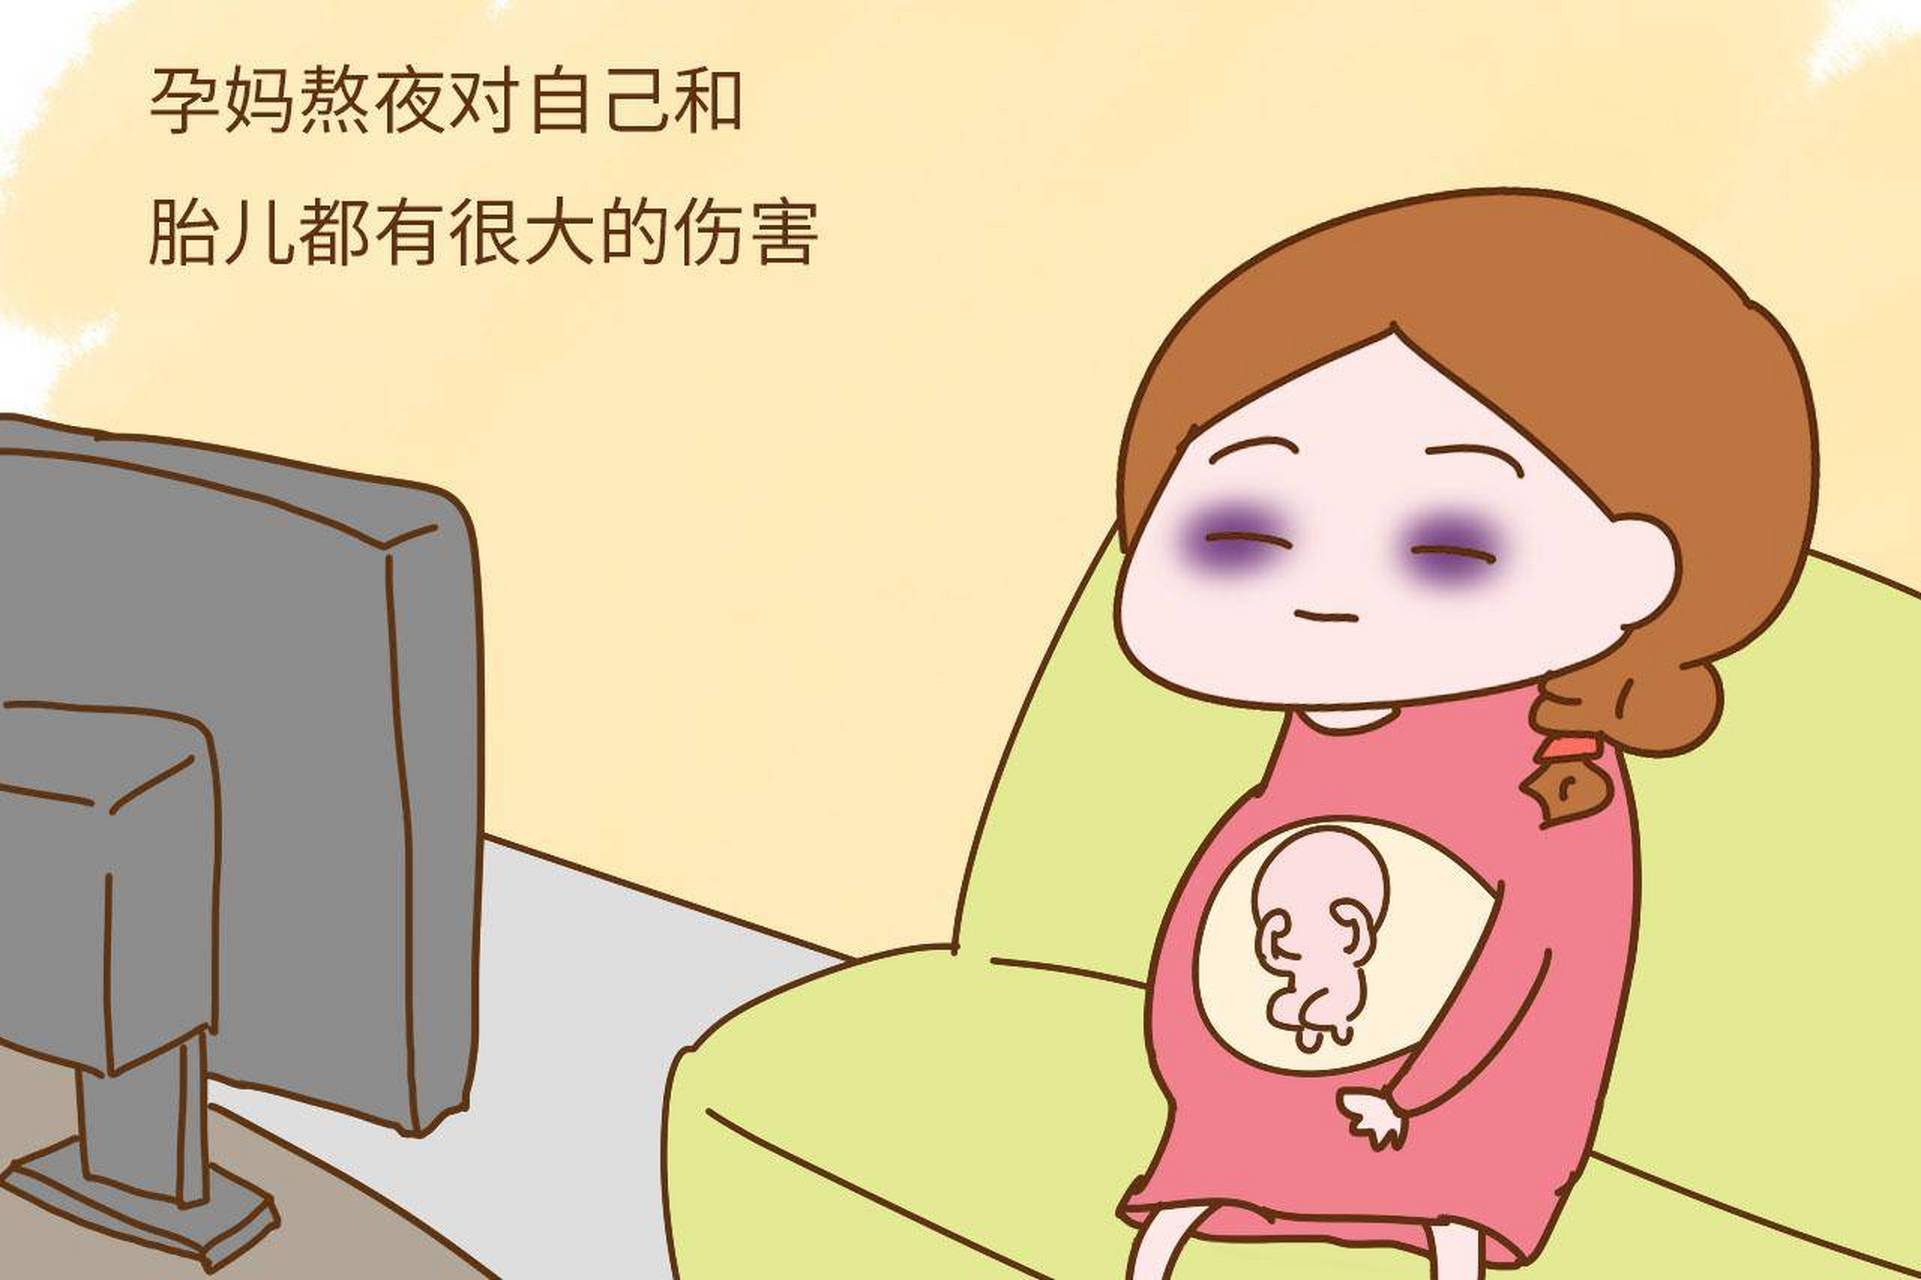 孕妇失眠卡通图片可爱图片